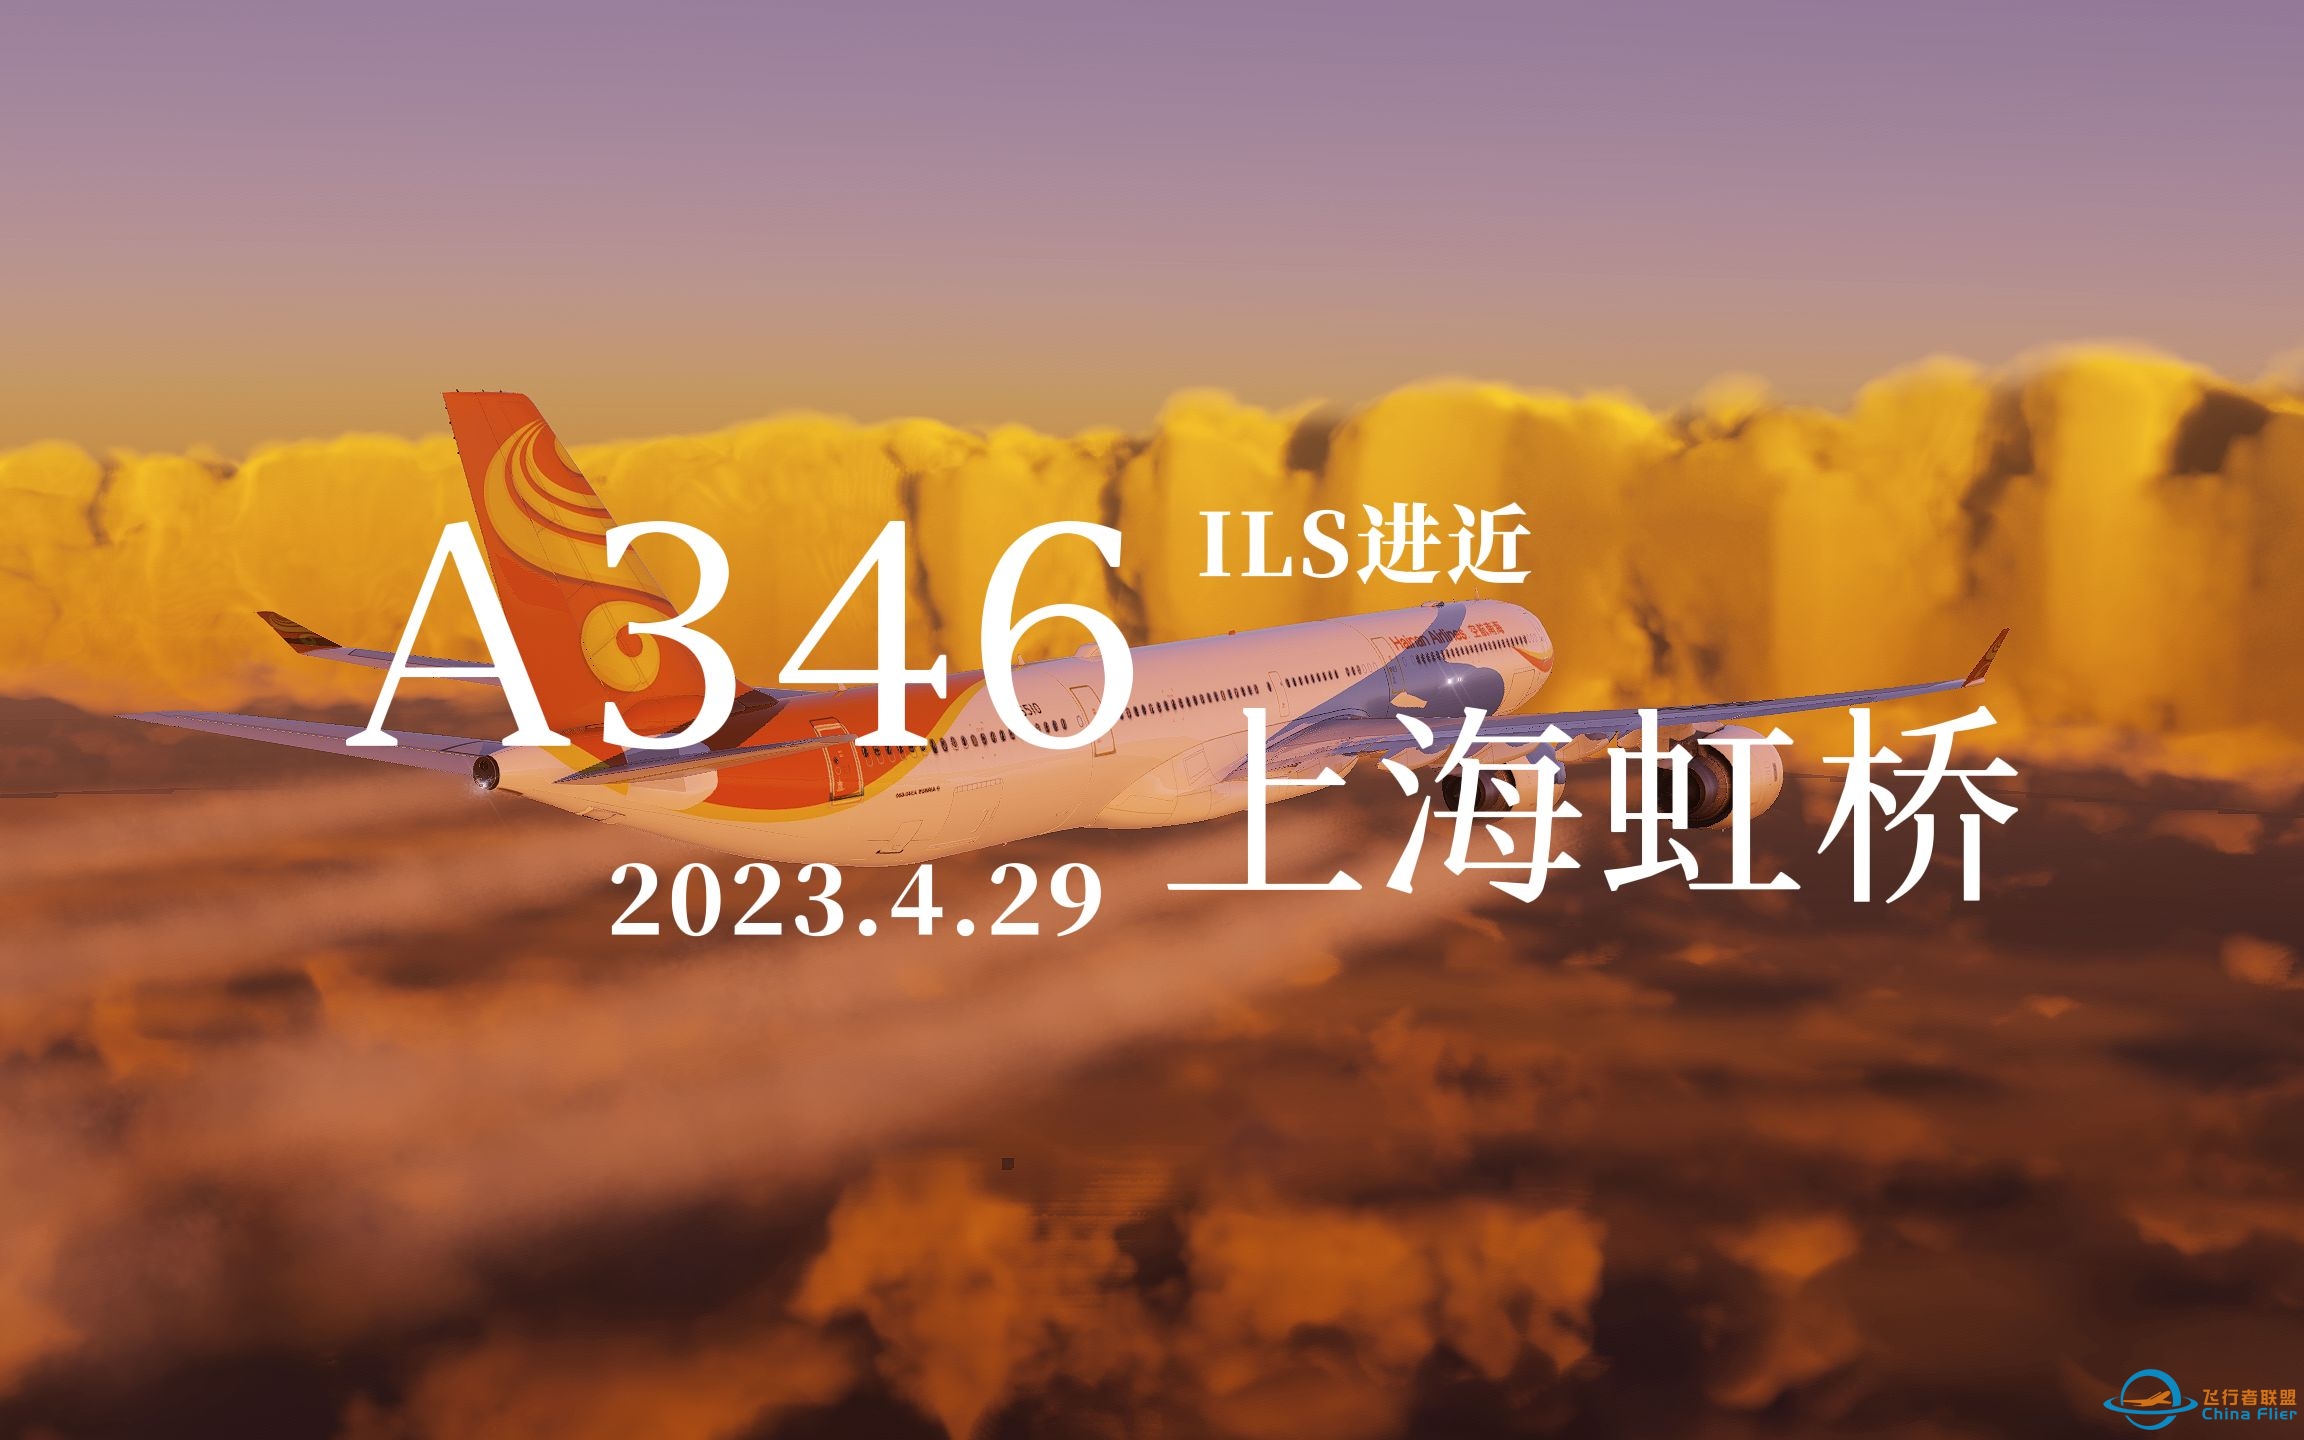 【Xplane12】Toliss A346落地上海虹桥36R-3045 